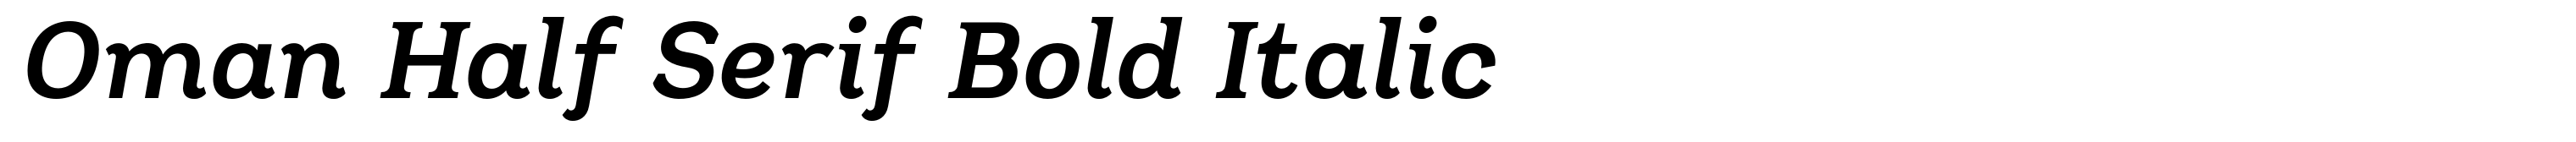 Oman Half Serif Bold Italic